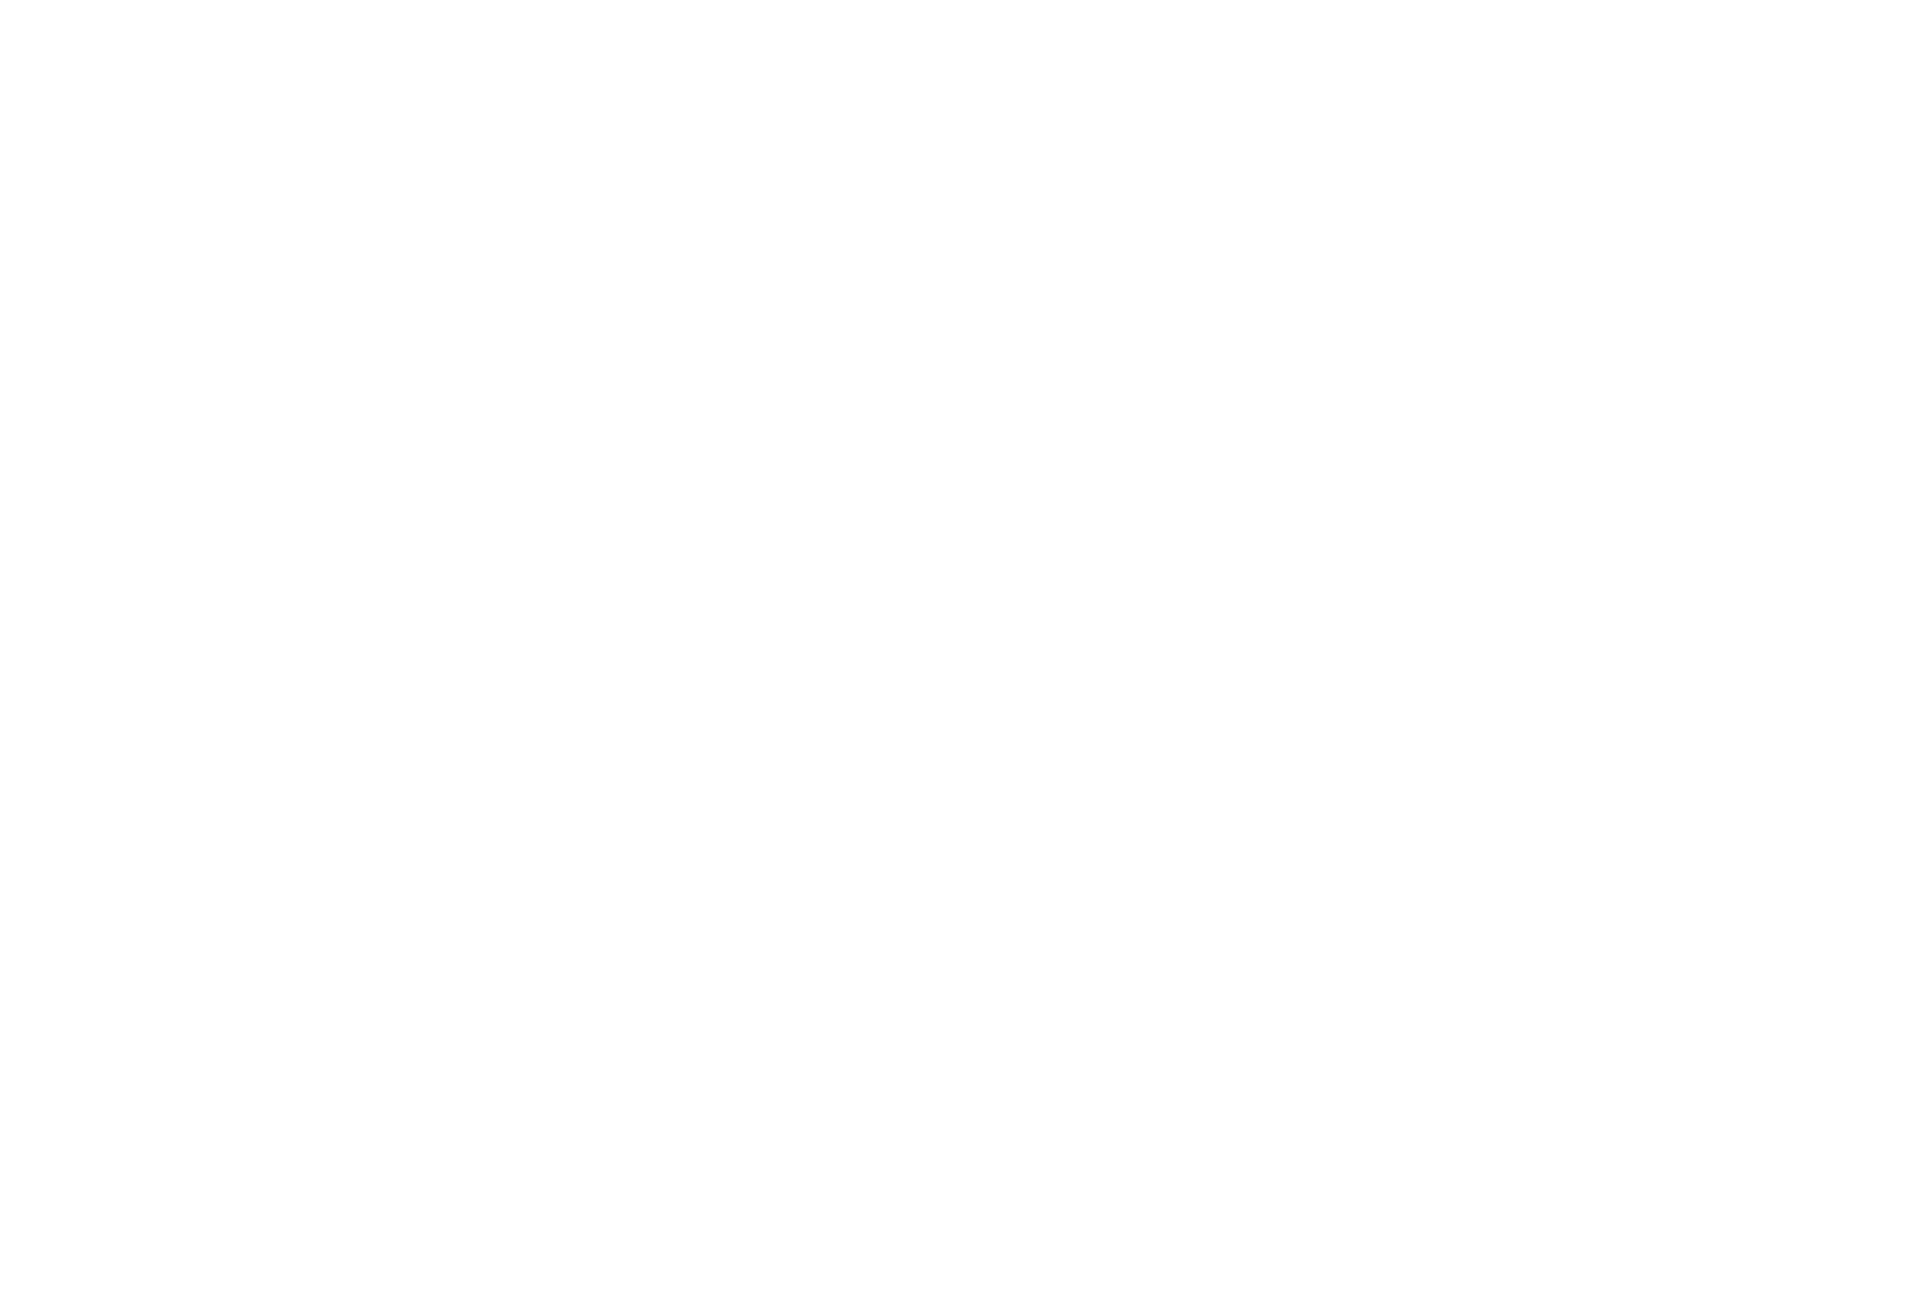 Stefan Erpelding